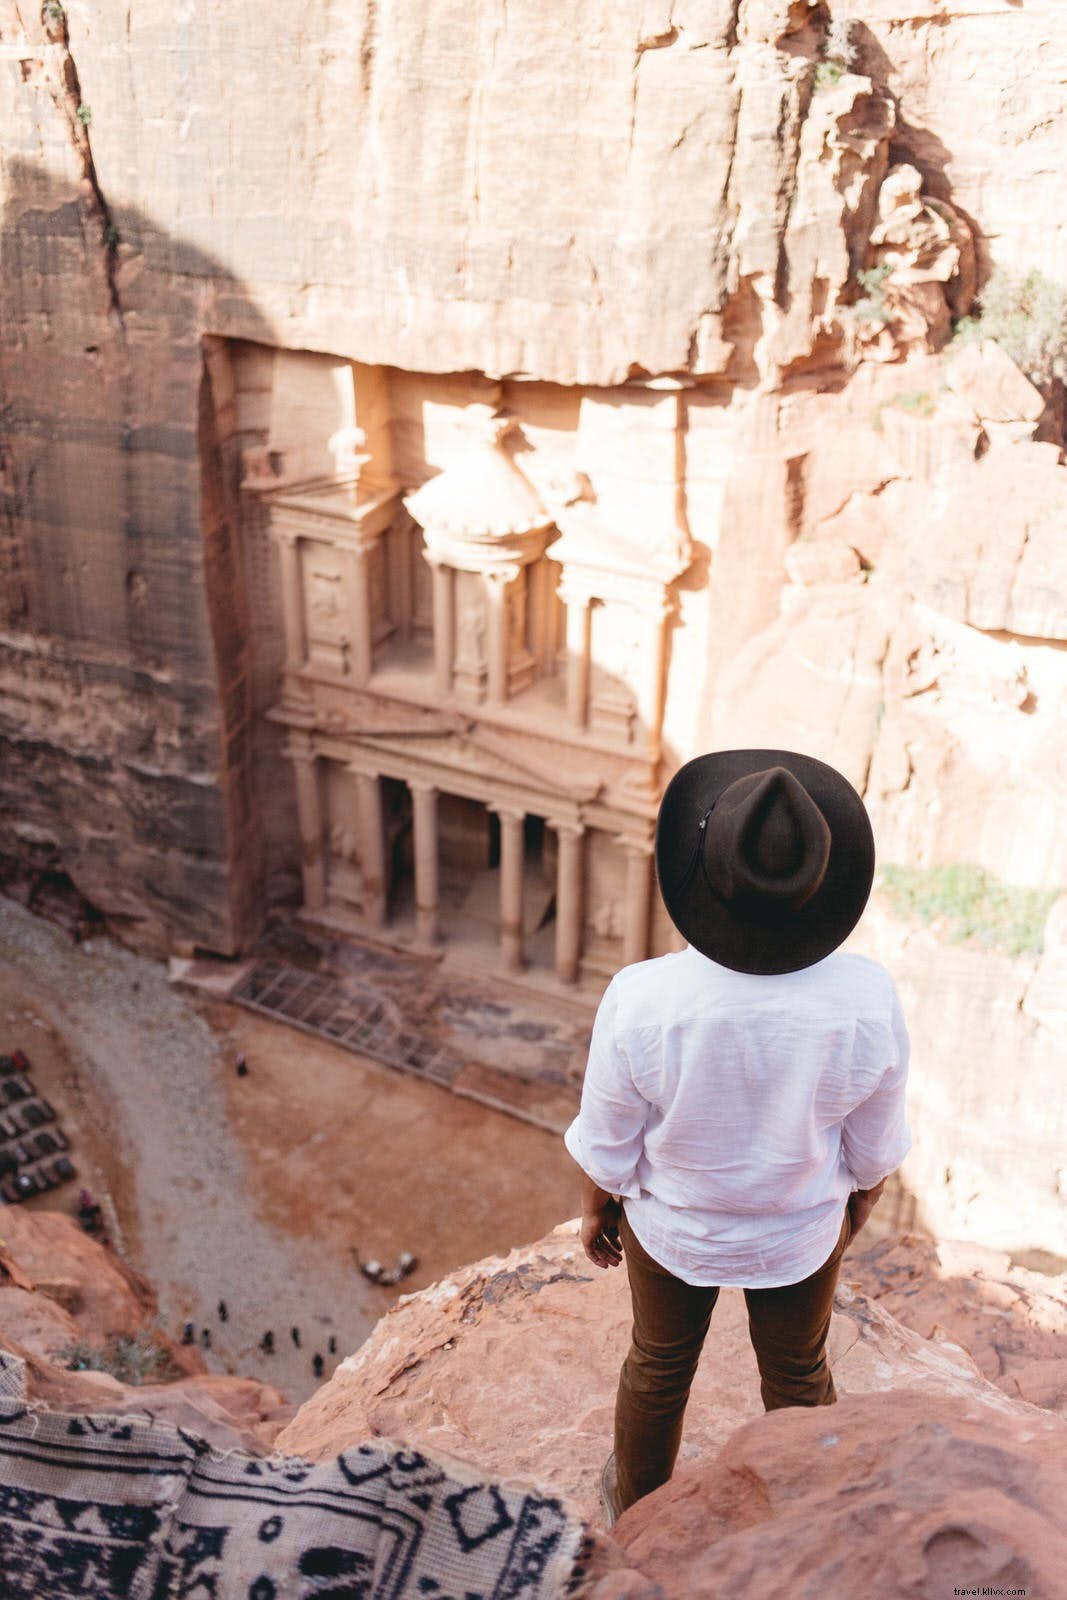 Petra essencial:como aproveitar ao máximo uma visita de um dia 